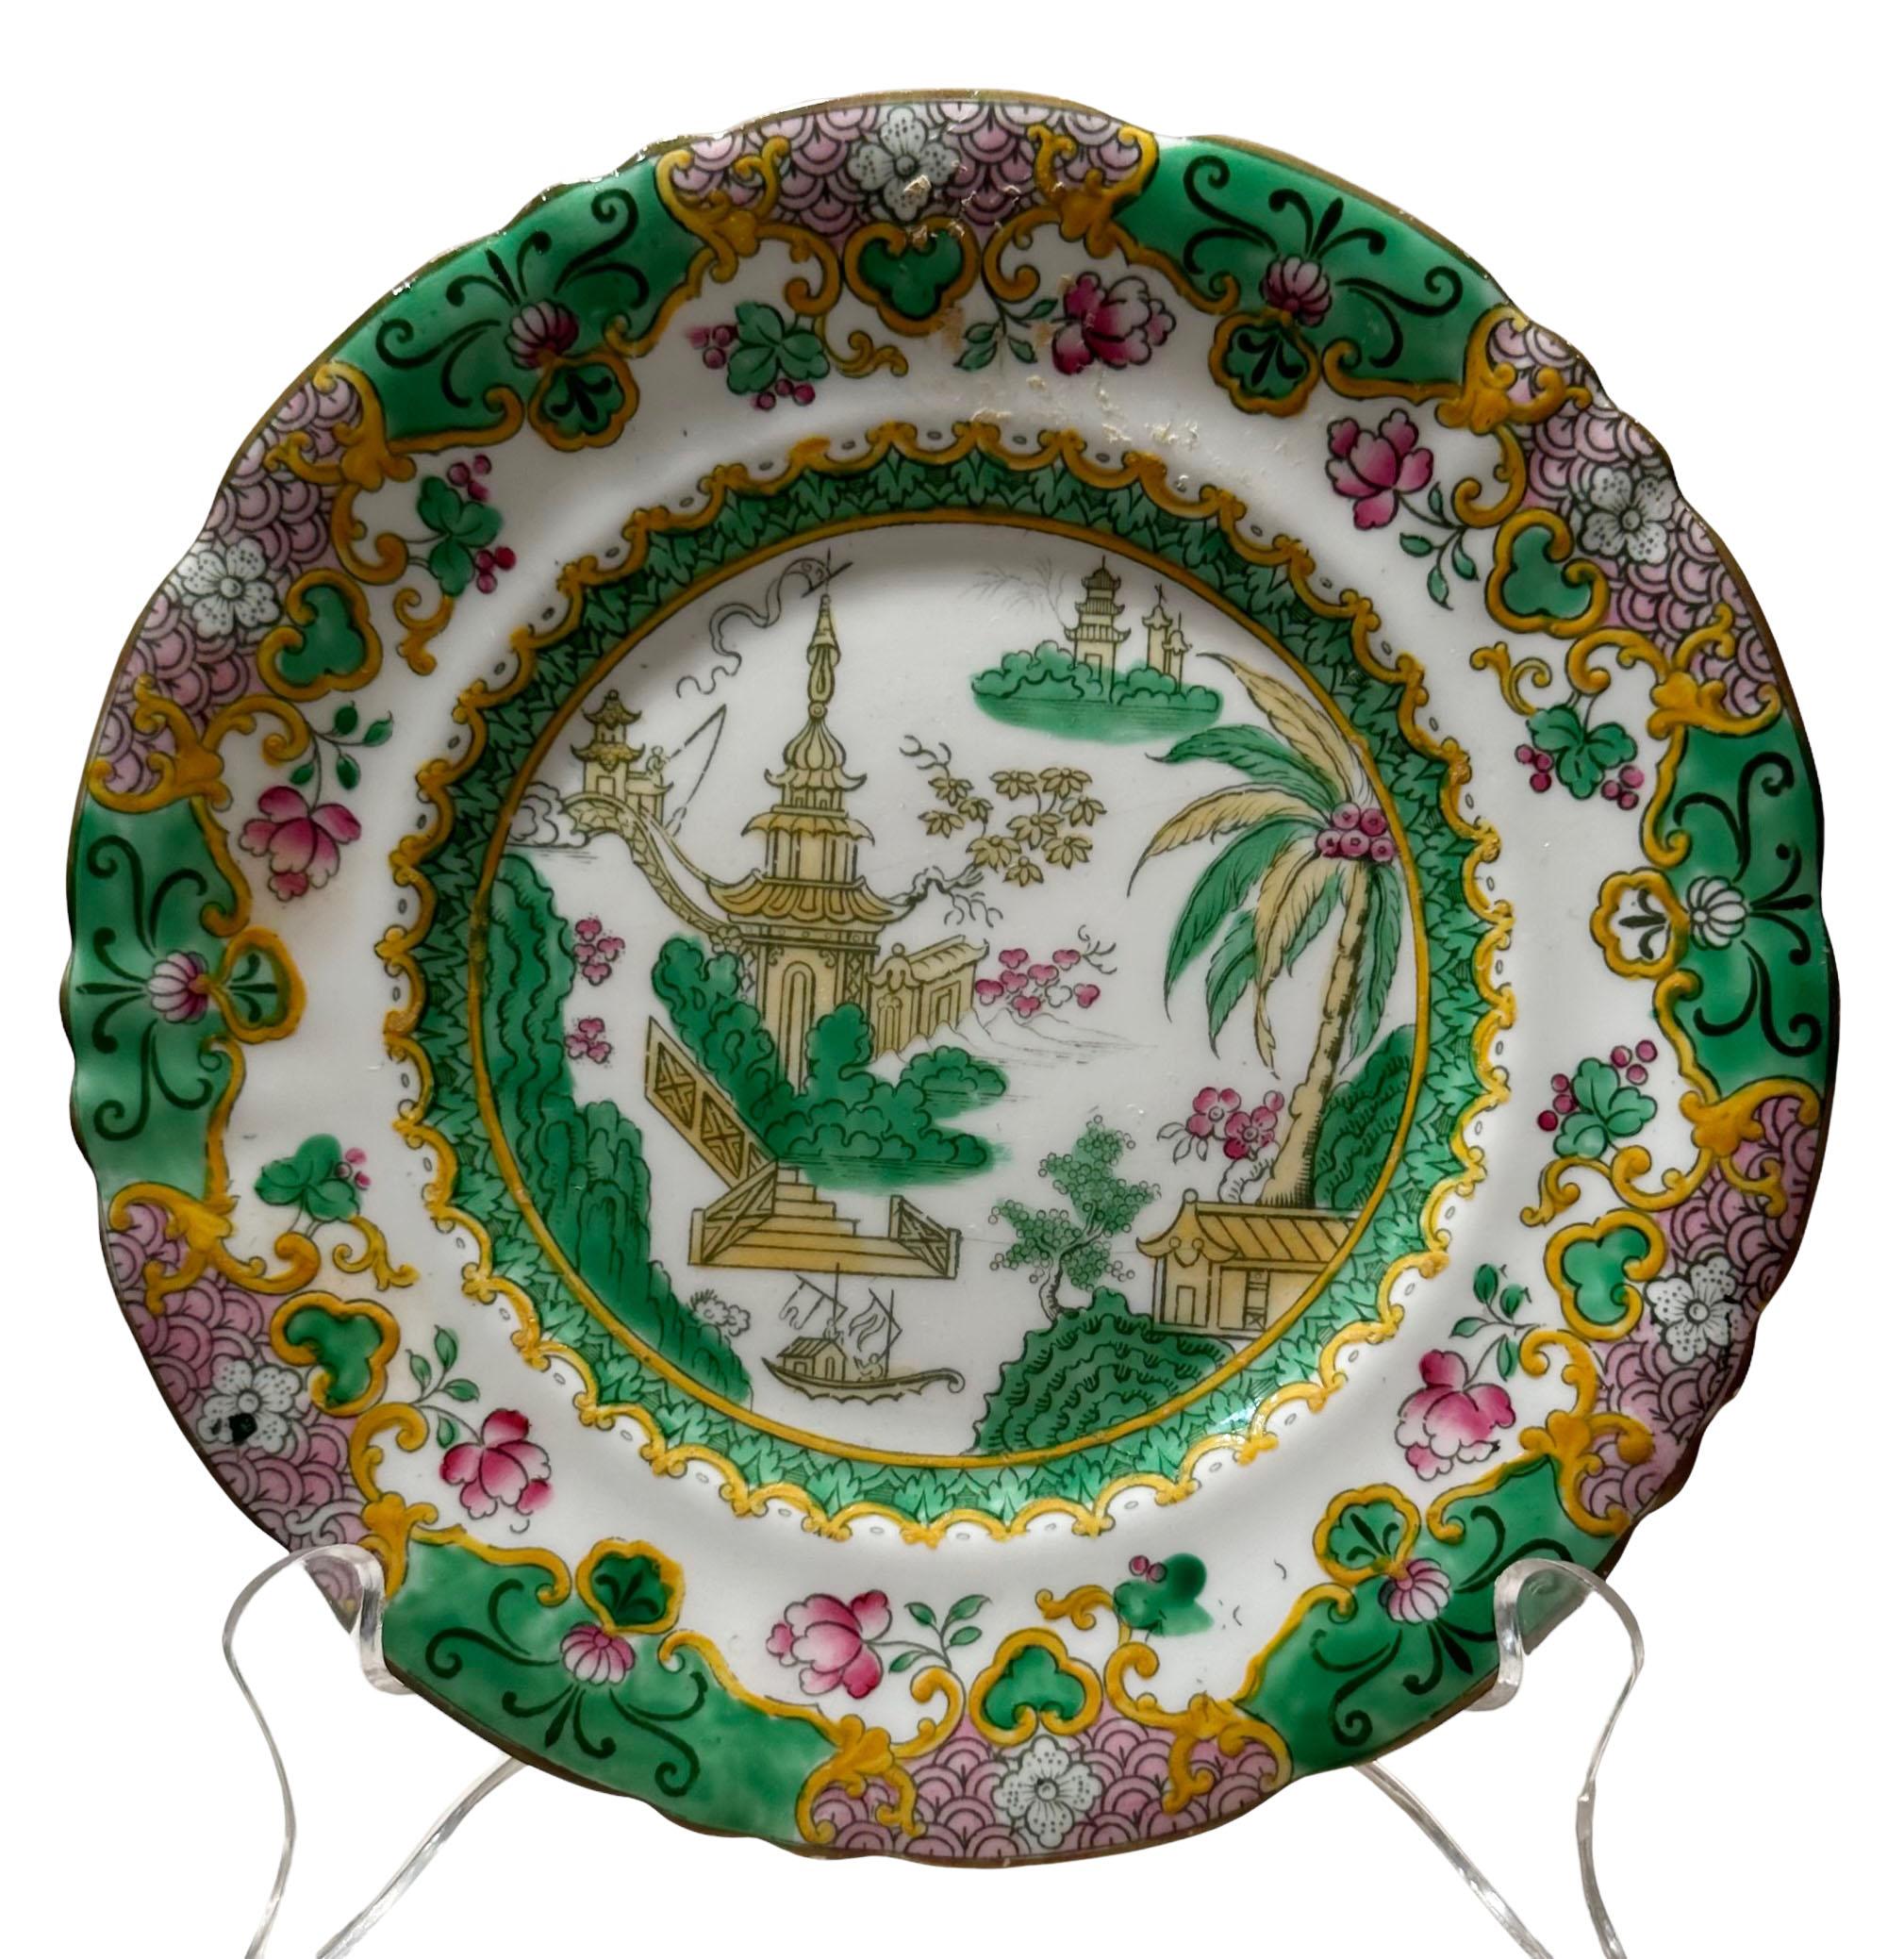 An antique pair of Royal Doulton plates depicting an oriental garden scene. Circa 1890s, England.